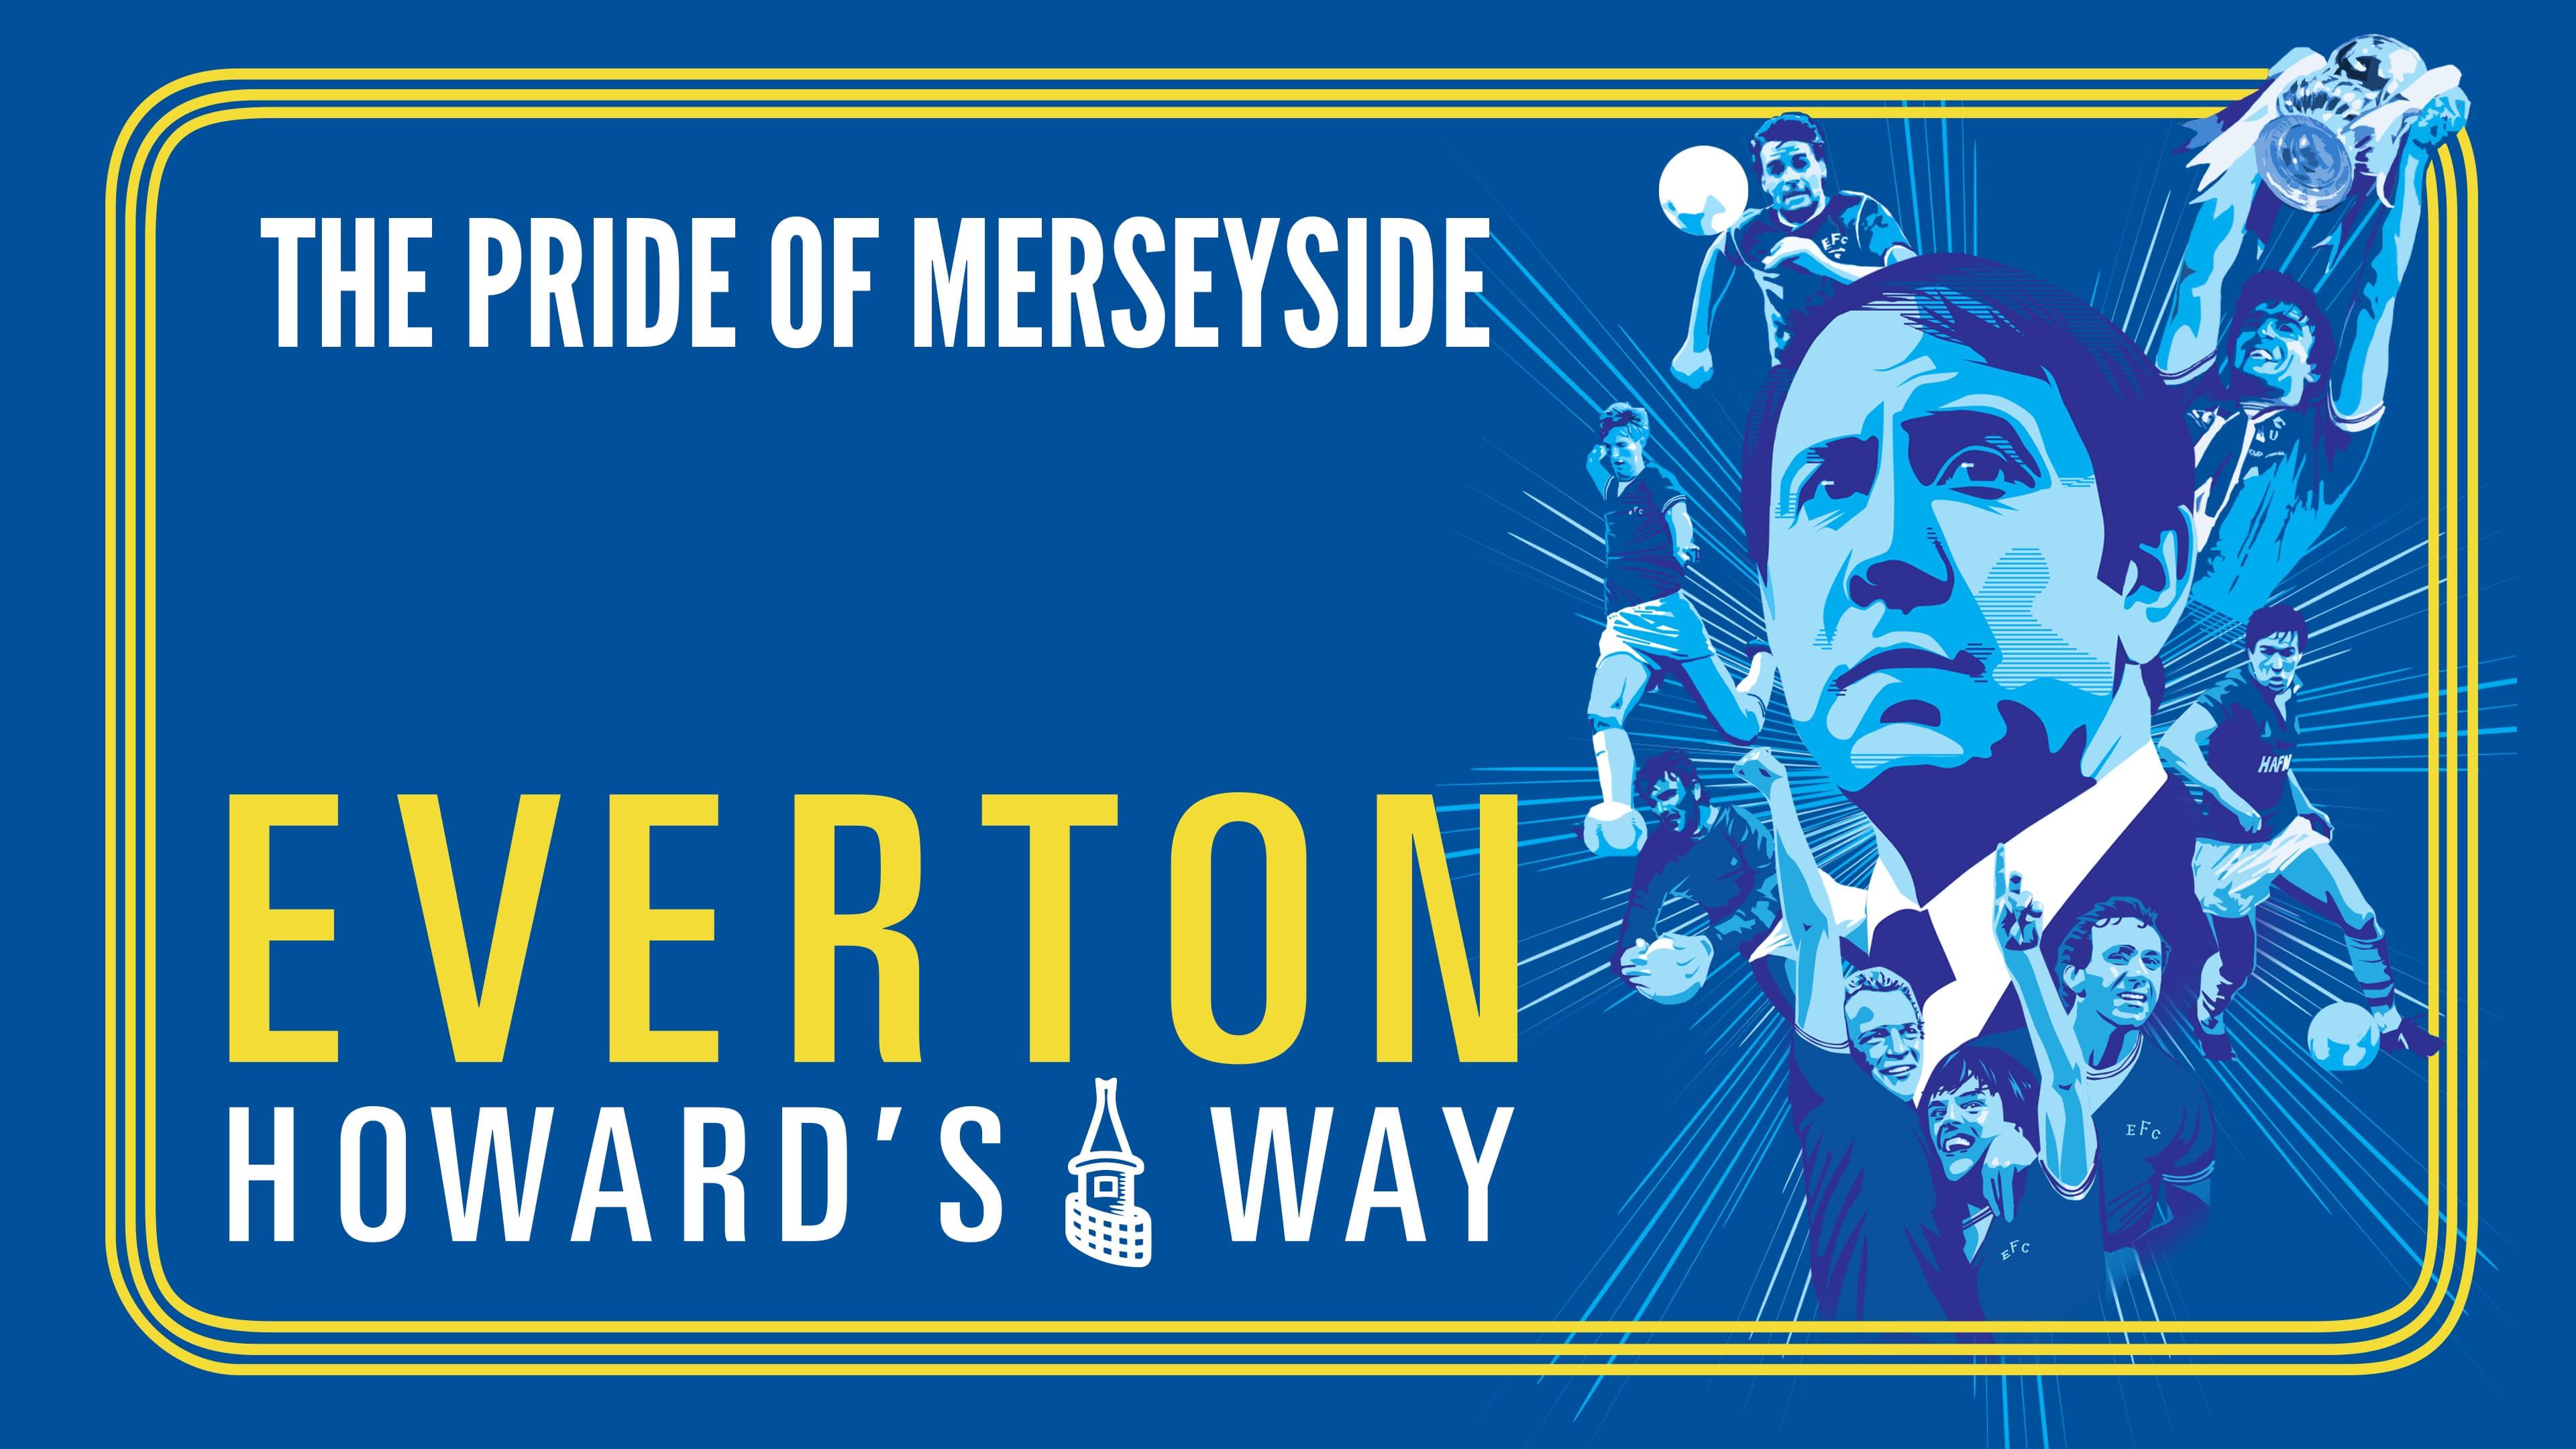 Everton: Howard's Way backdrop